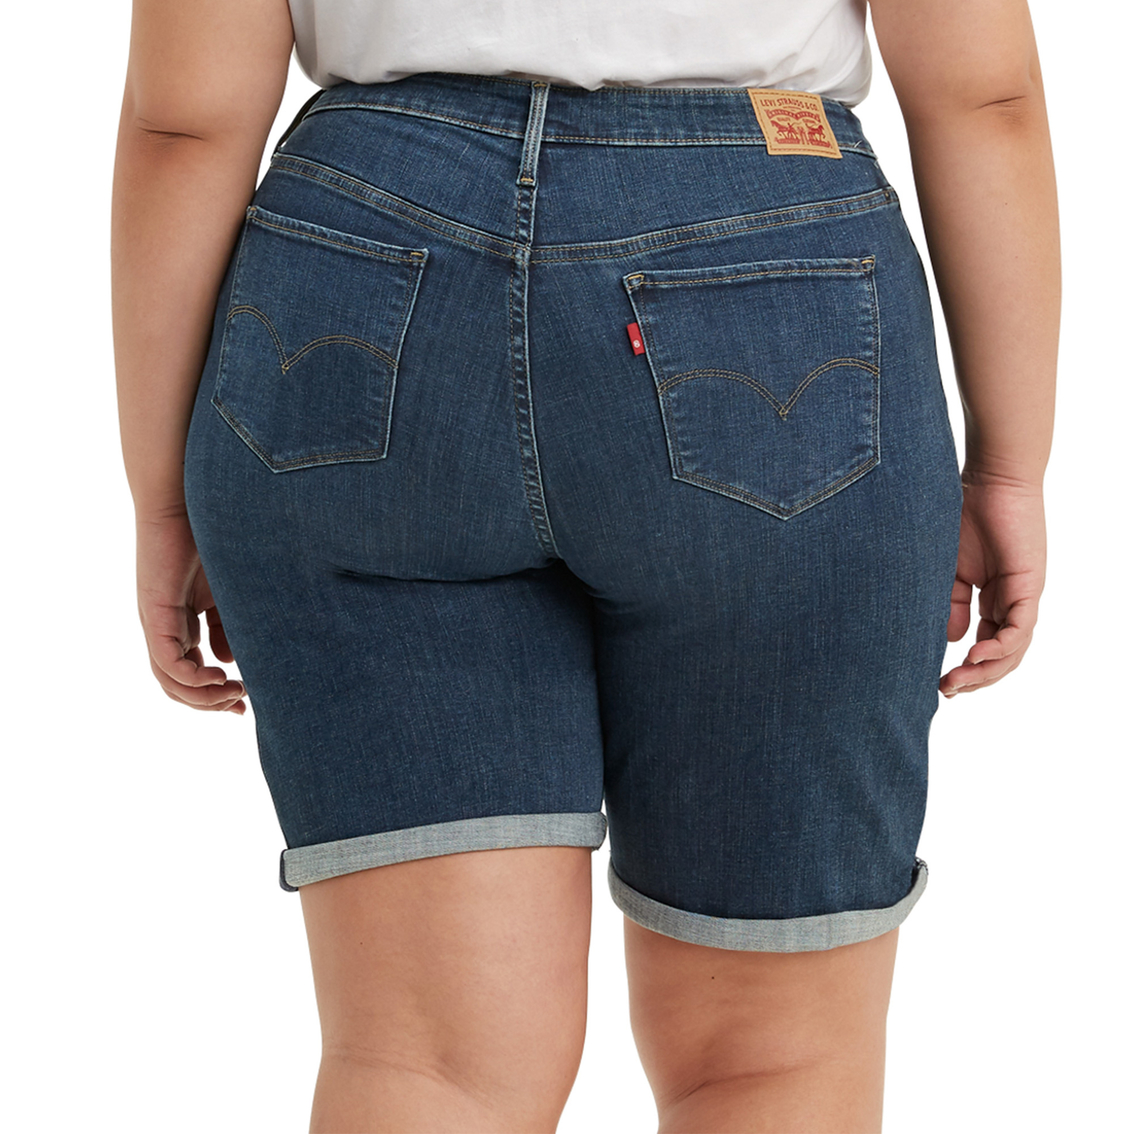 Levi's Plus Size Shaping Bermuda Shorts | Shorts | Clothing ...